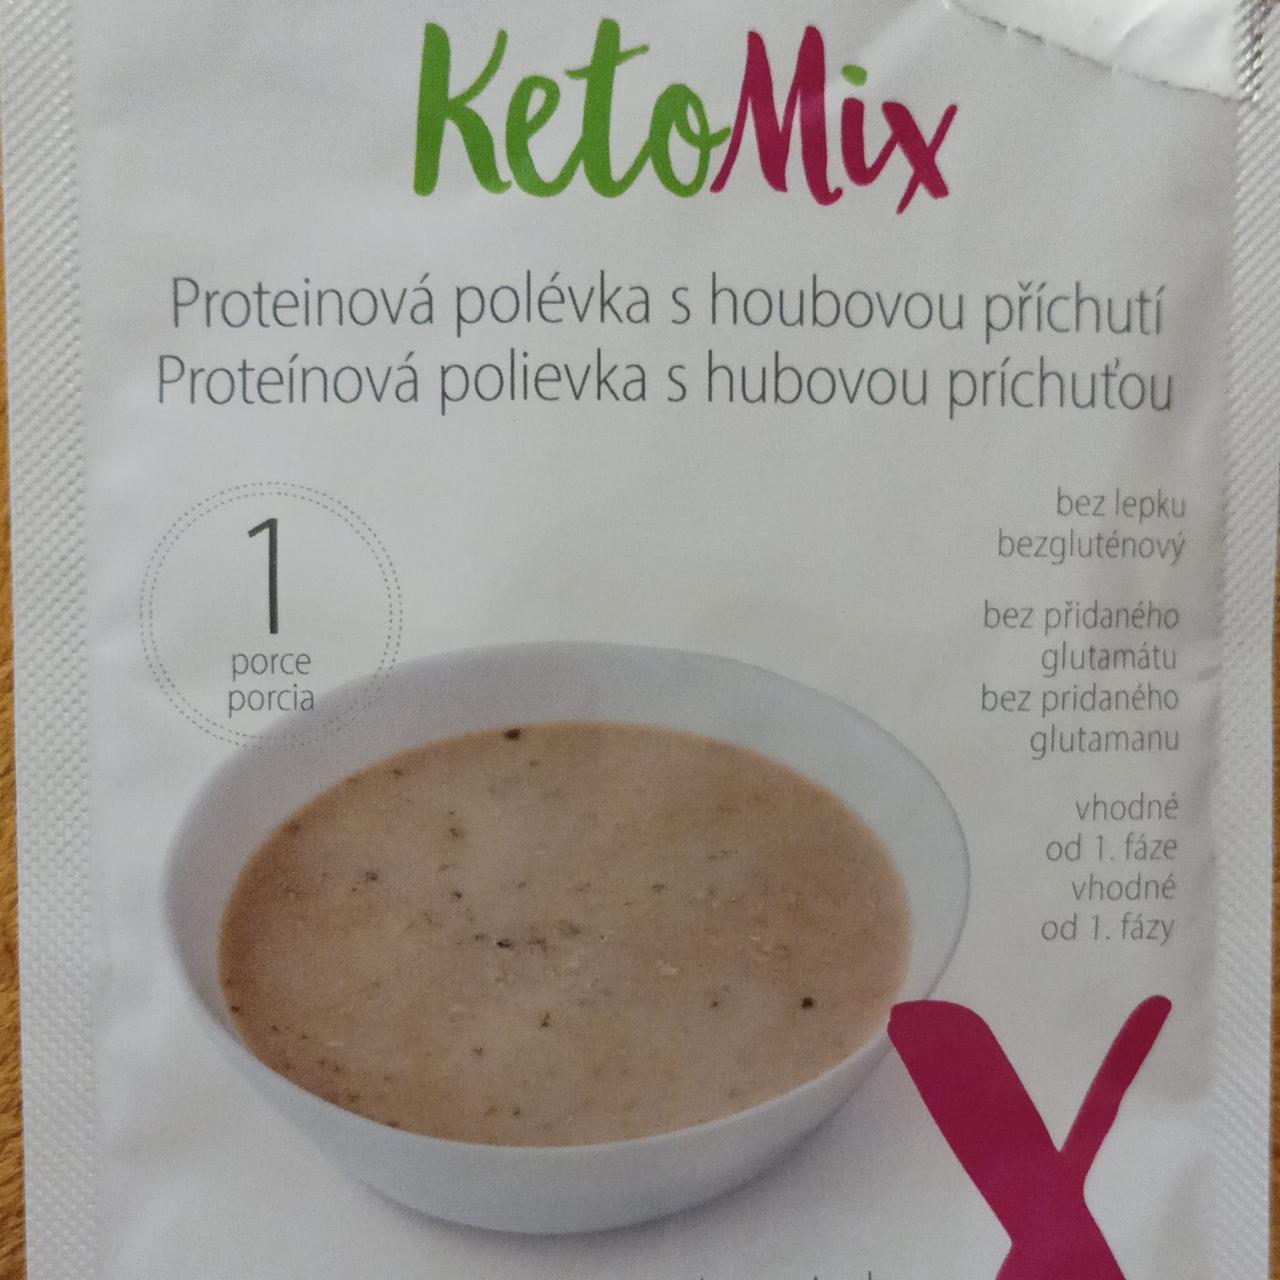 Fotografie - Proteinová polévka s houbovou příchutí KetoMix 